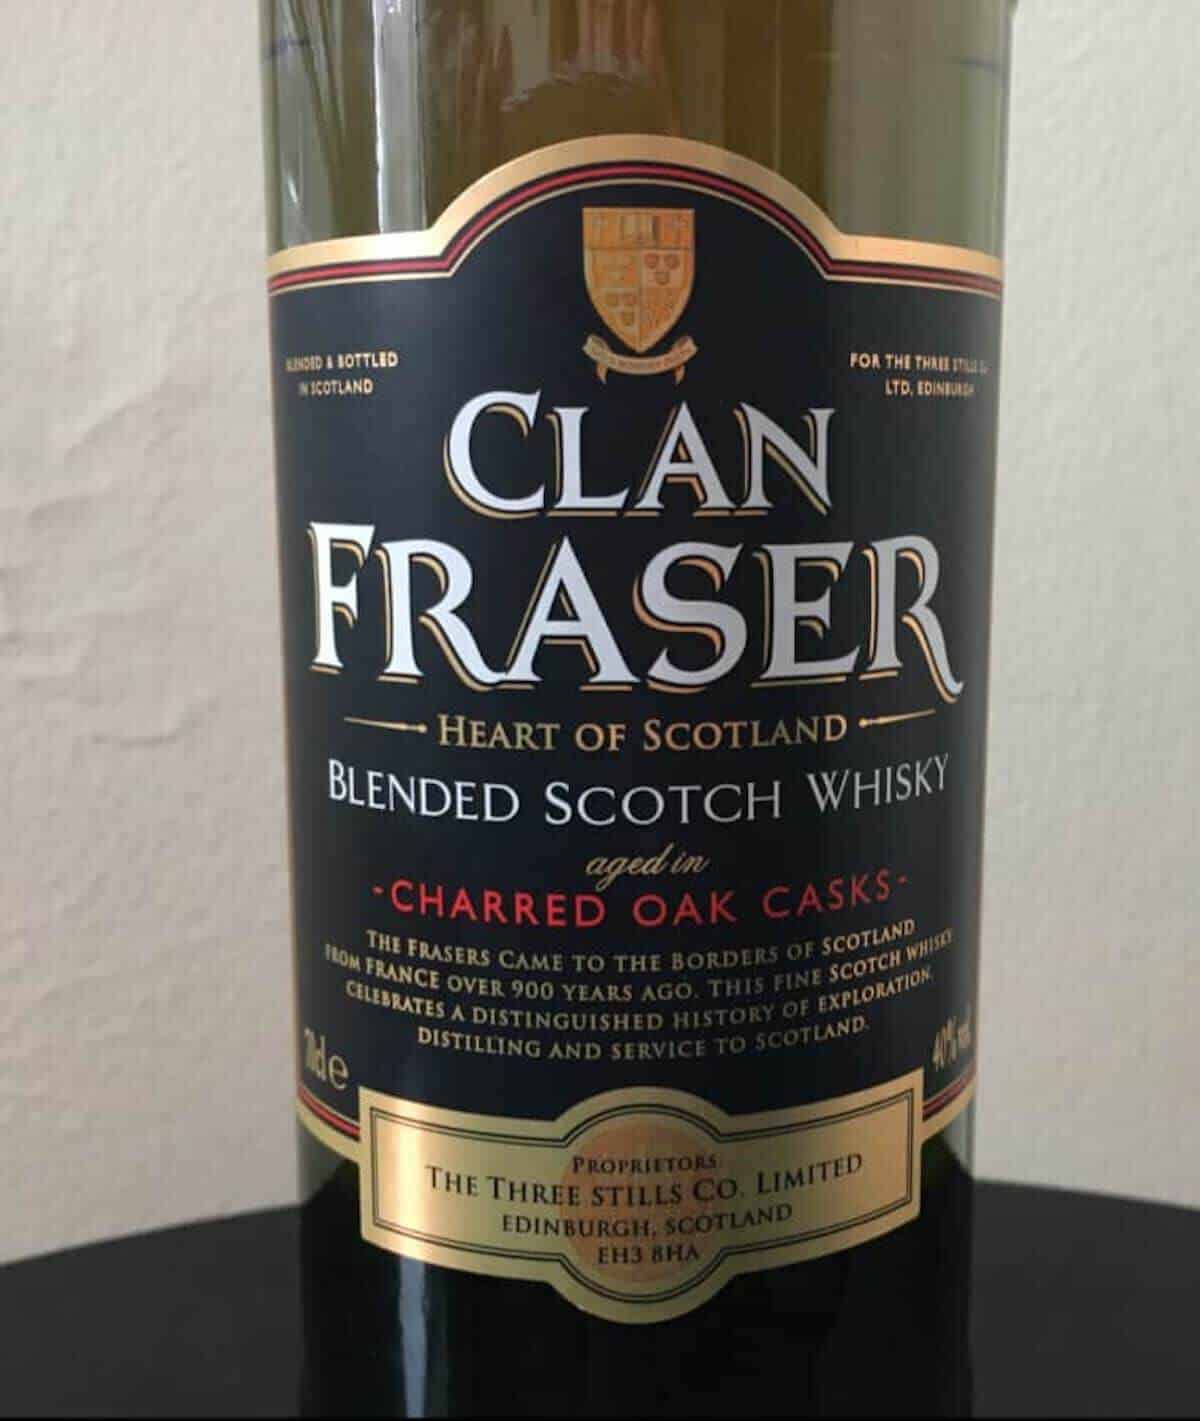 Clan Fraser blended scotch whisky bottle label.